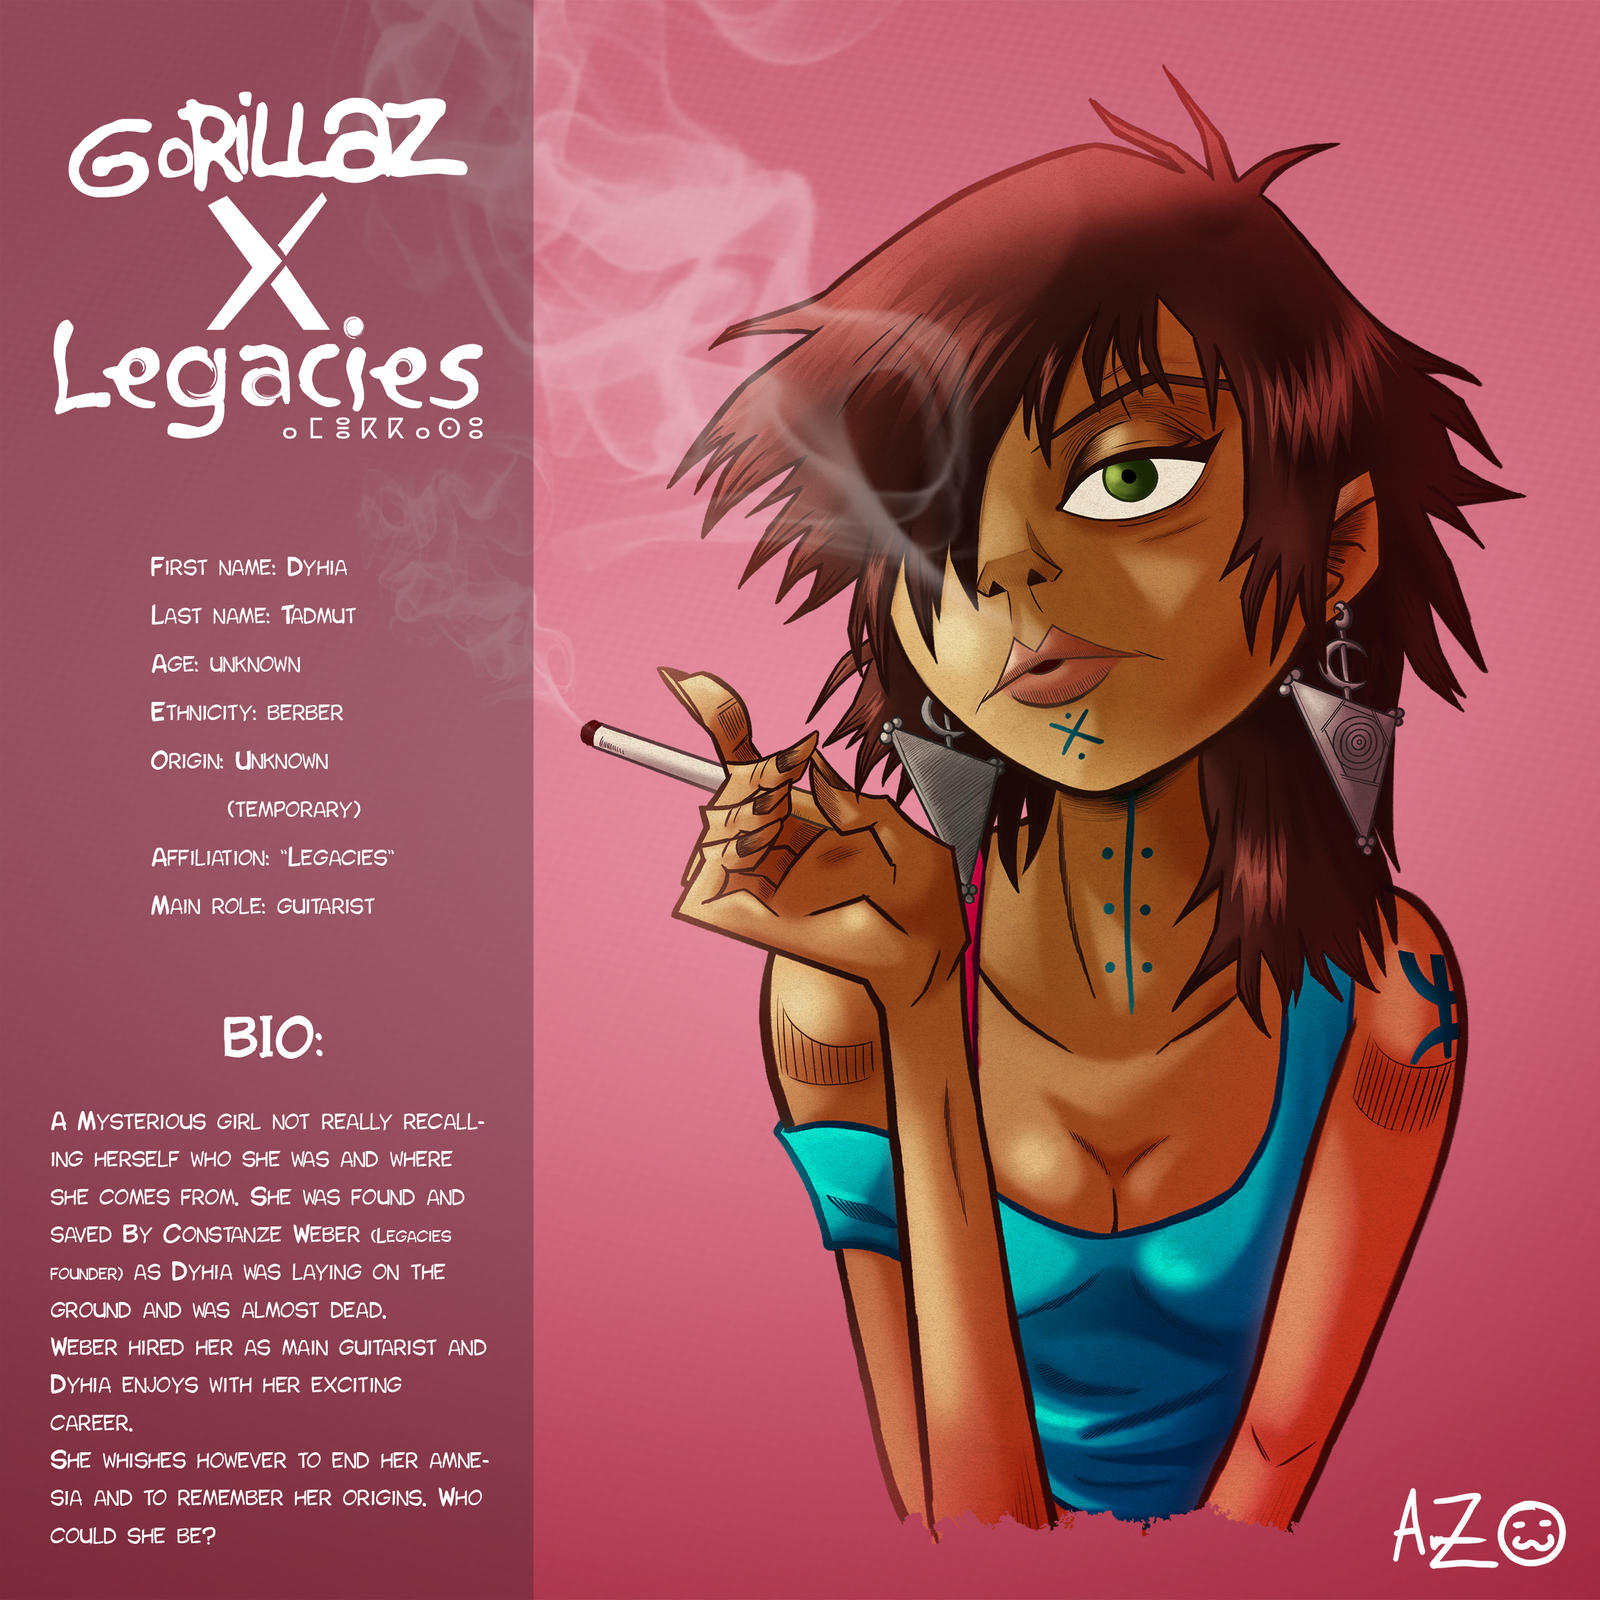 Gorillaz X Legacies Dyhia S Bio By Amaruzeichner On Deviantart